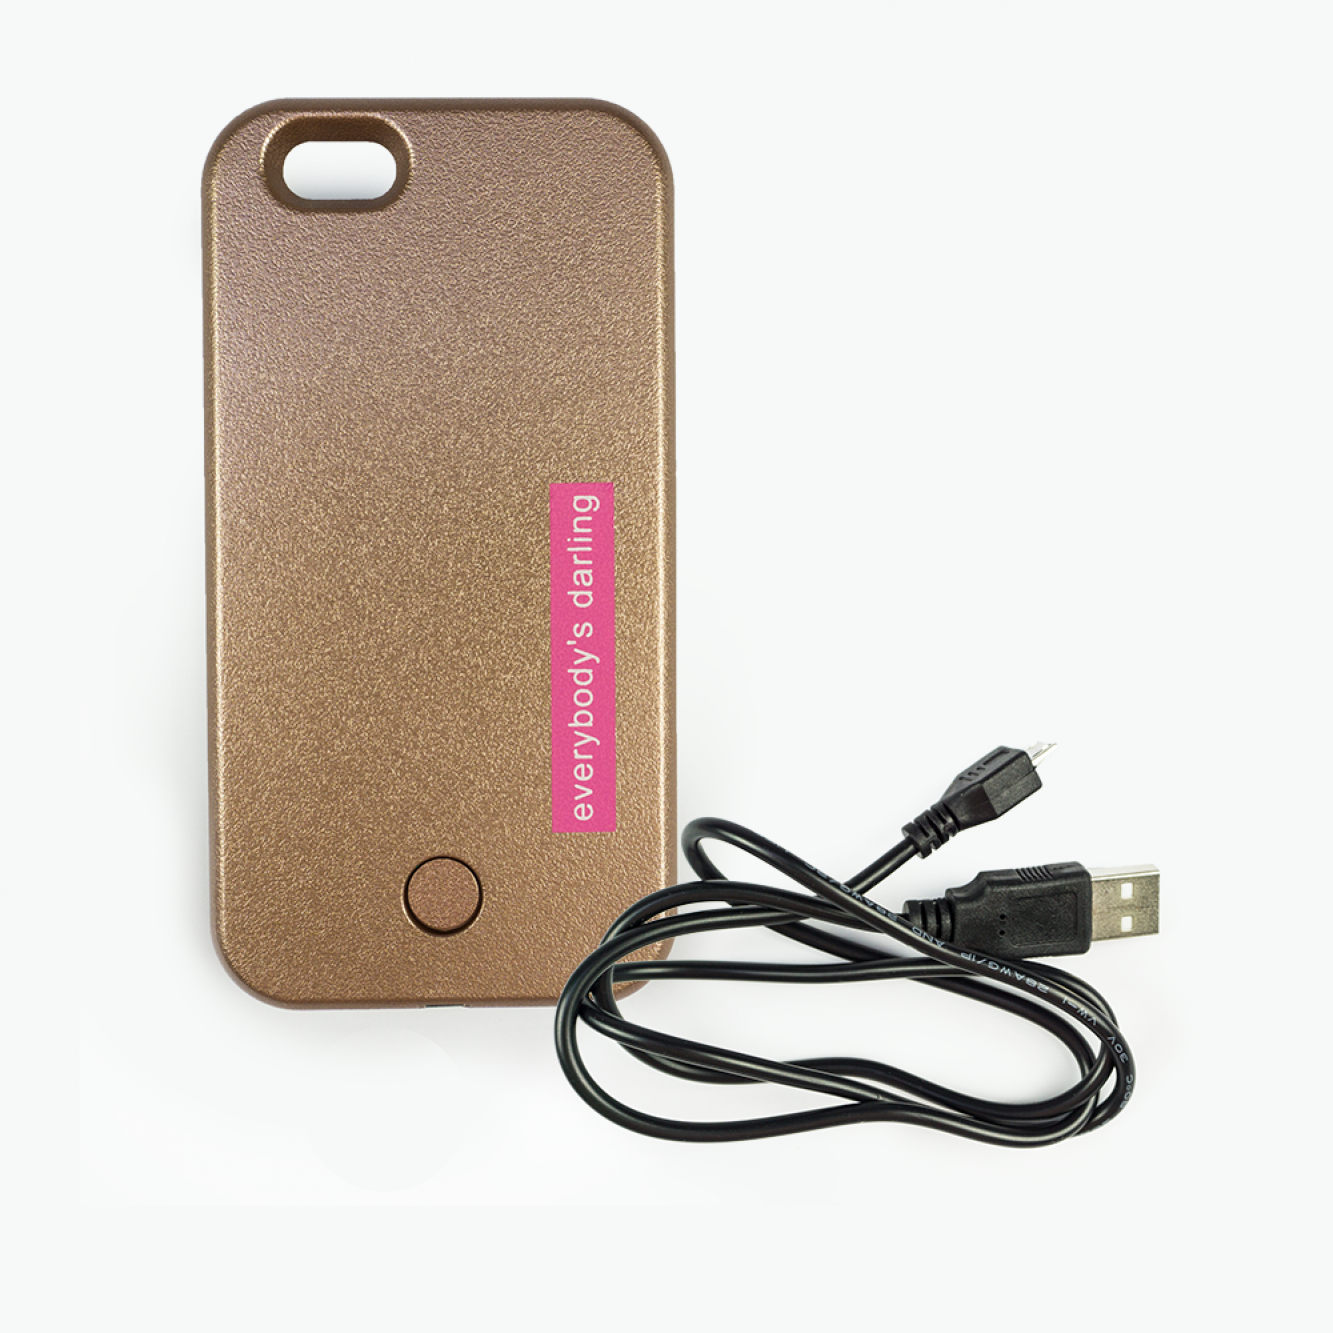 LED Selfie Hülle für iPhone 6 6s | Protection Case mit SOS Licht | schwarz black